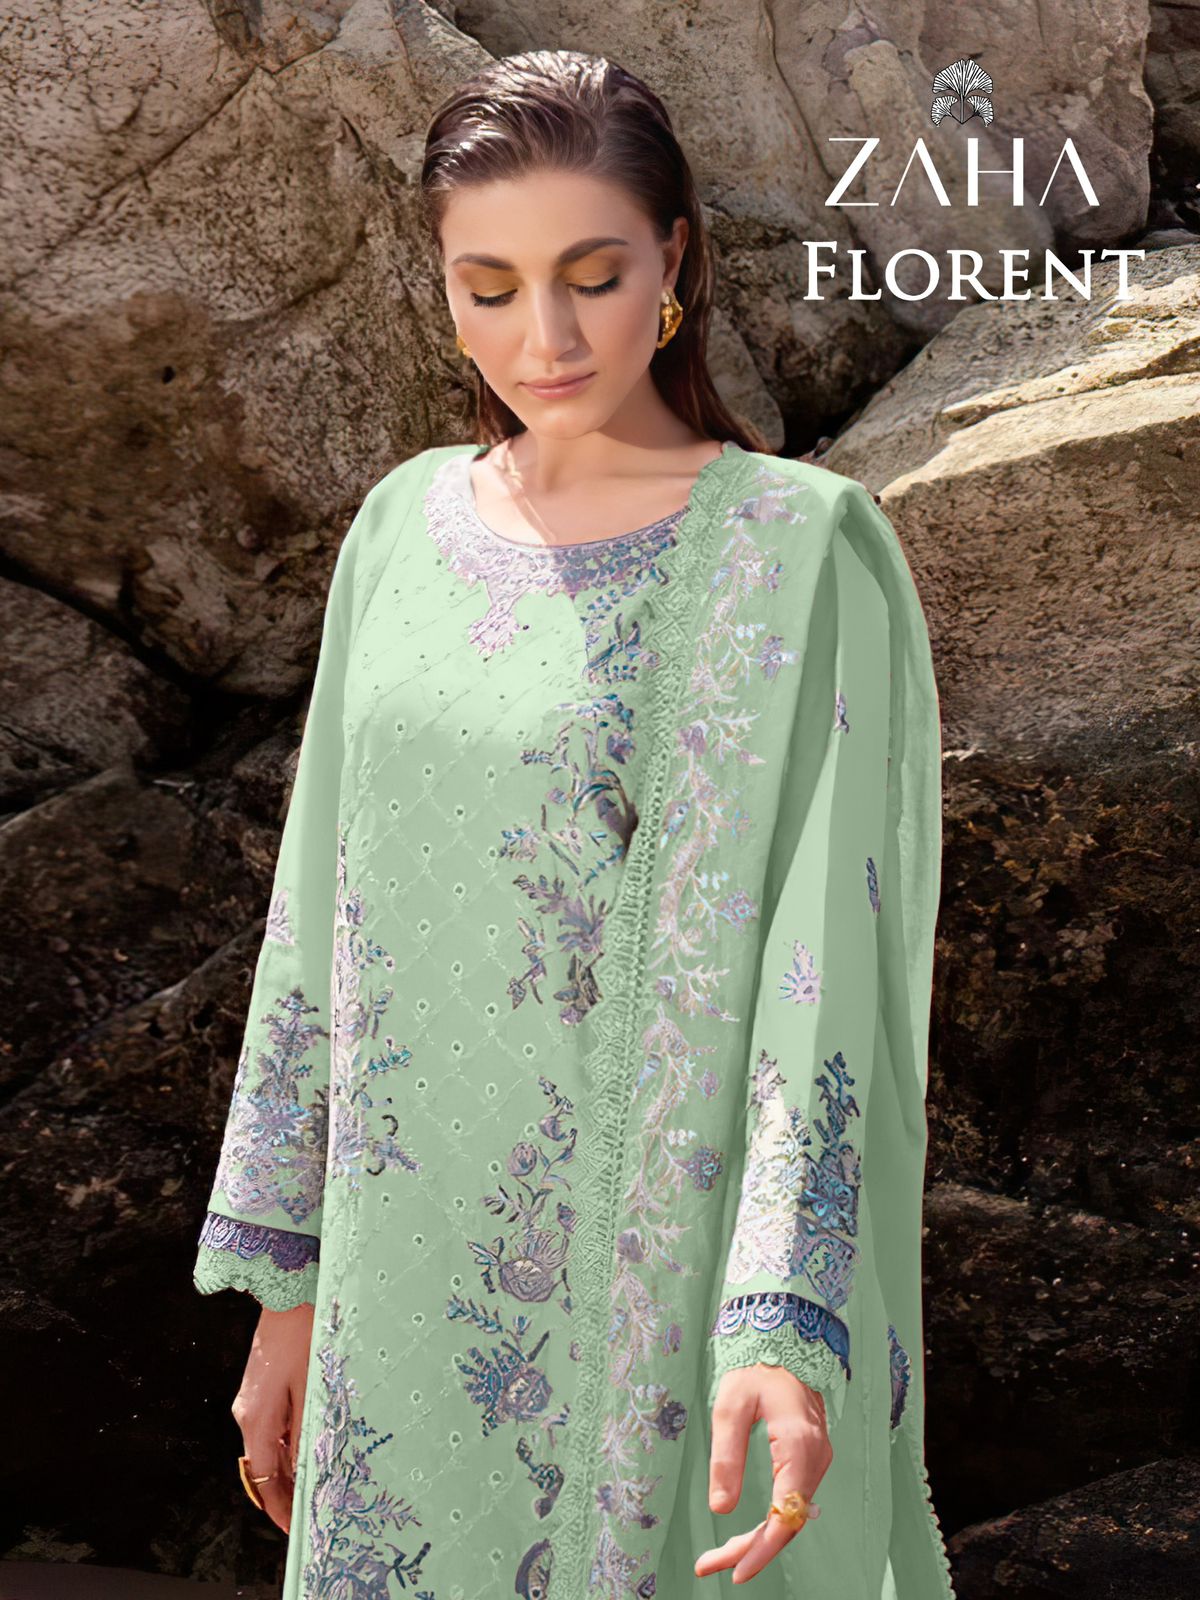 Florent 10296 Zaha Cambric Cotton Pakistani Salwar Suits